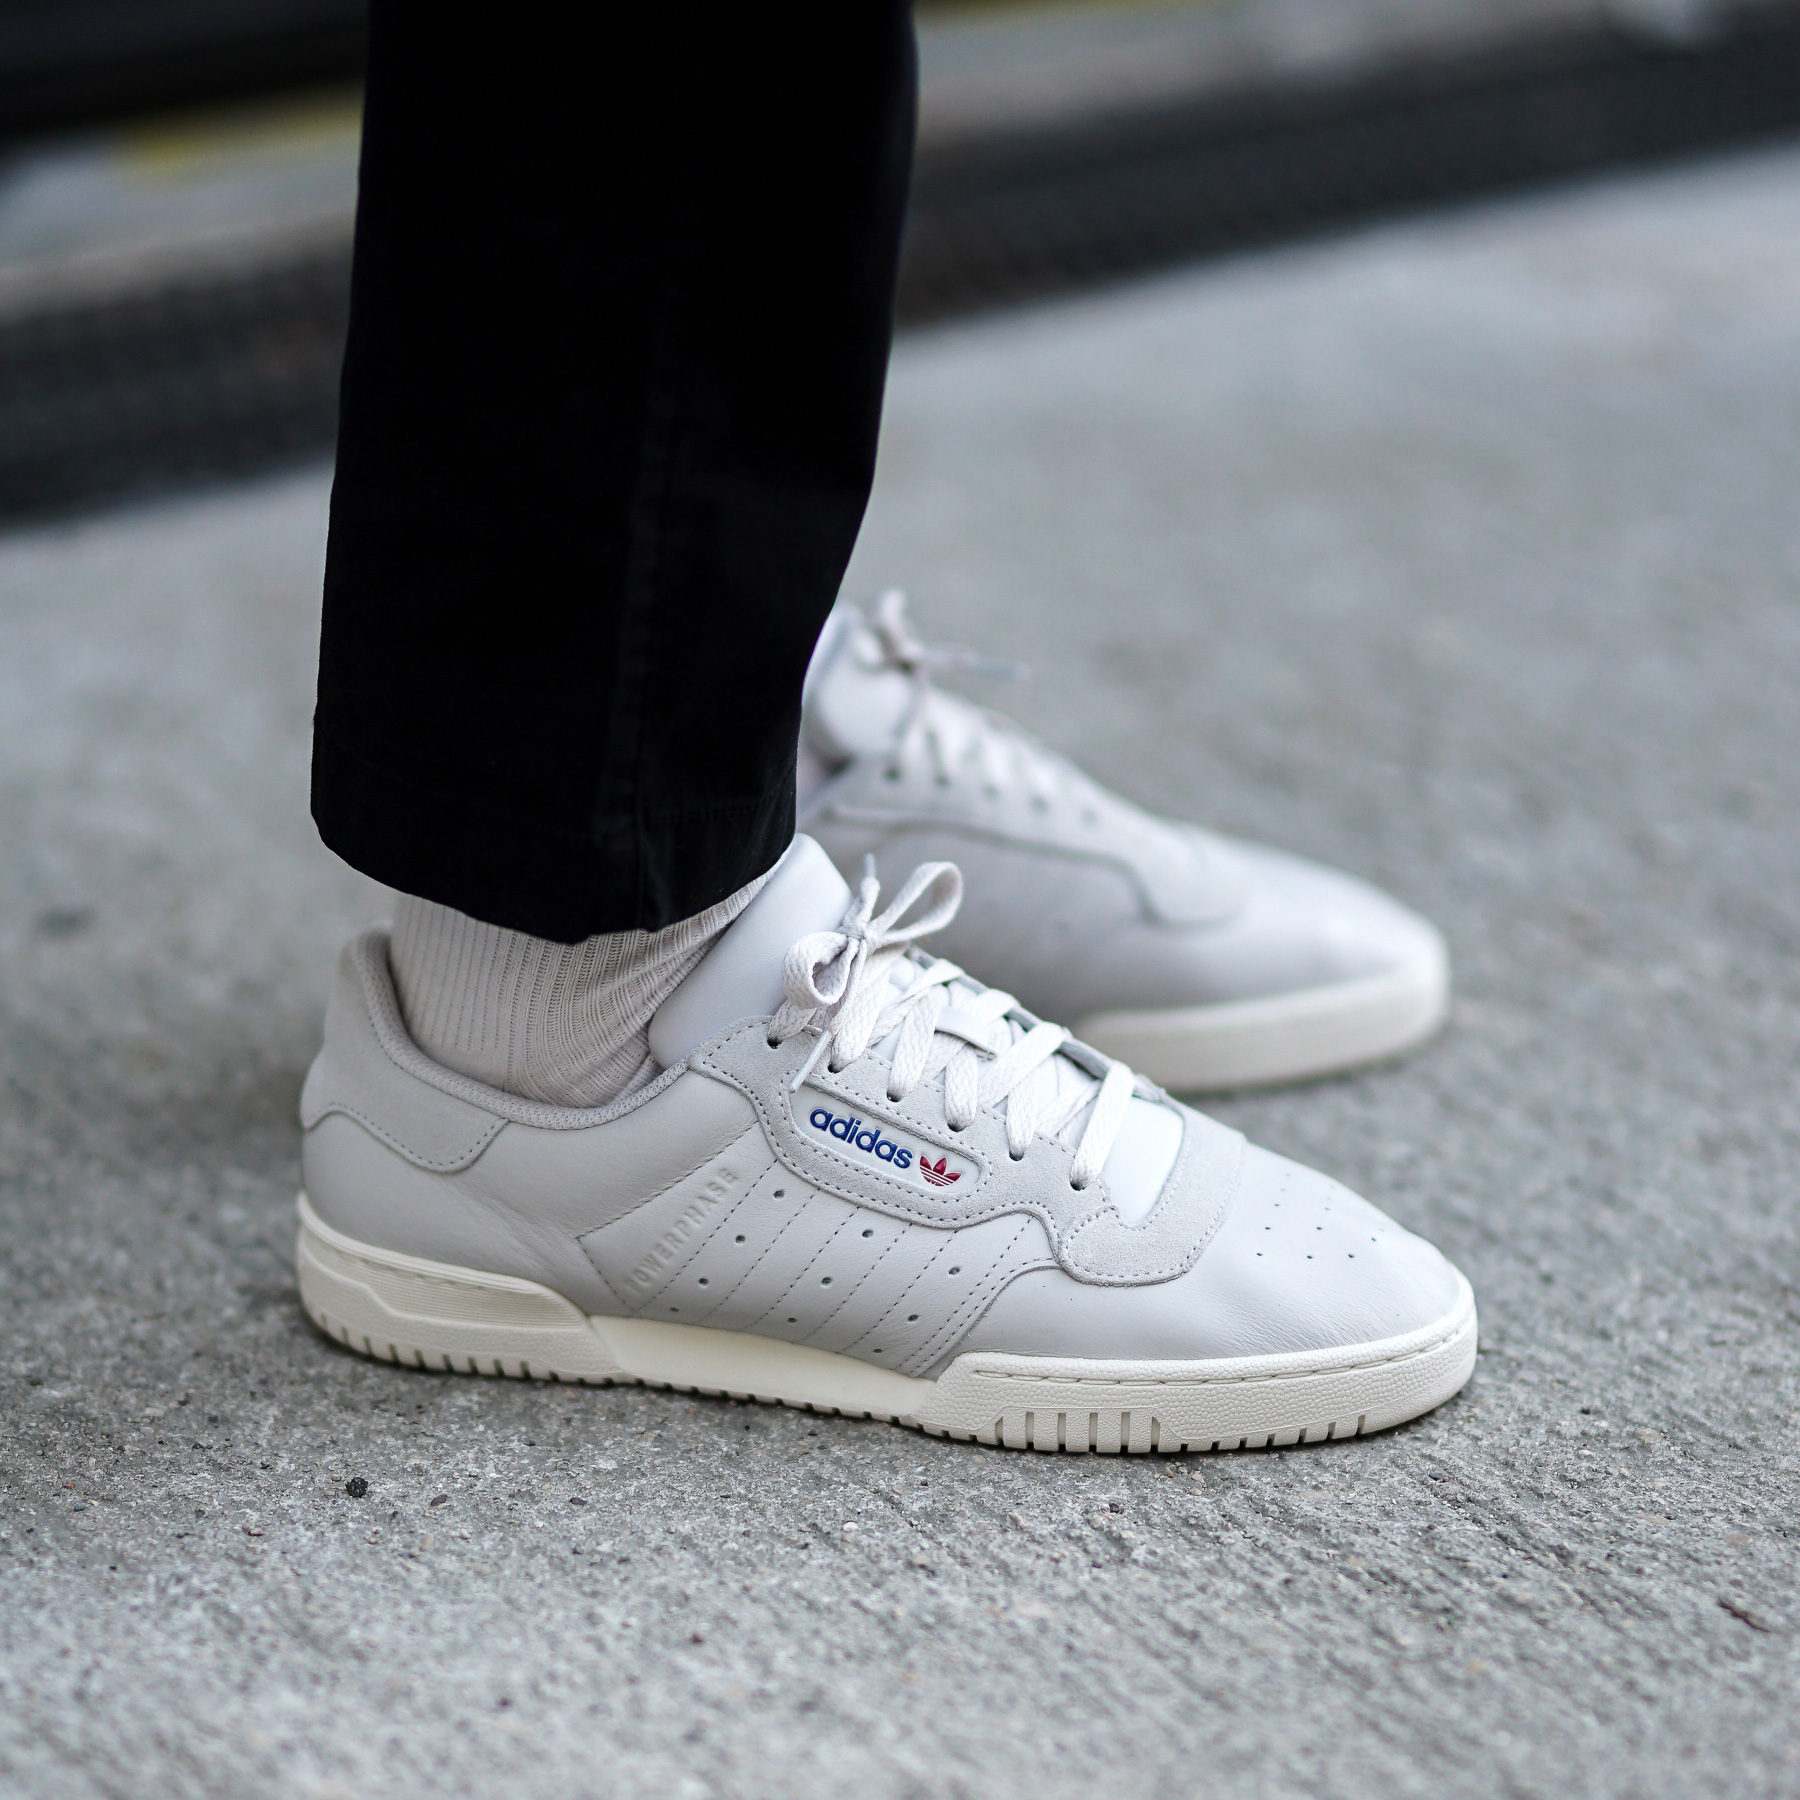 adidas powerphase white on feet